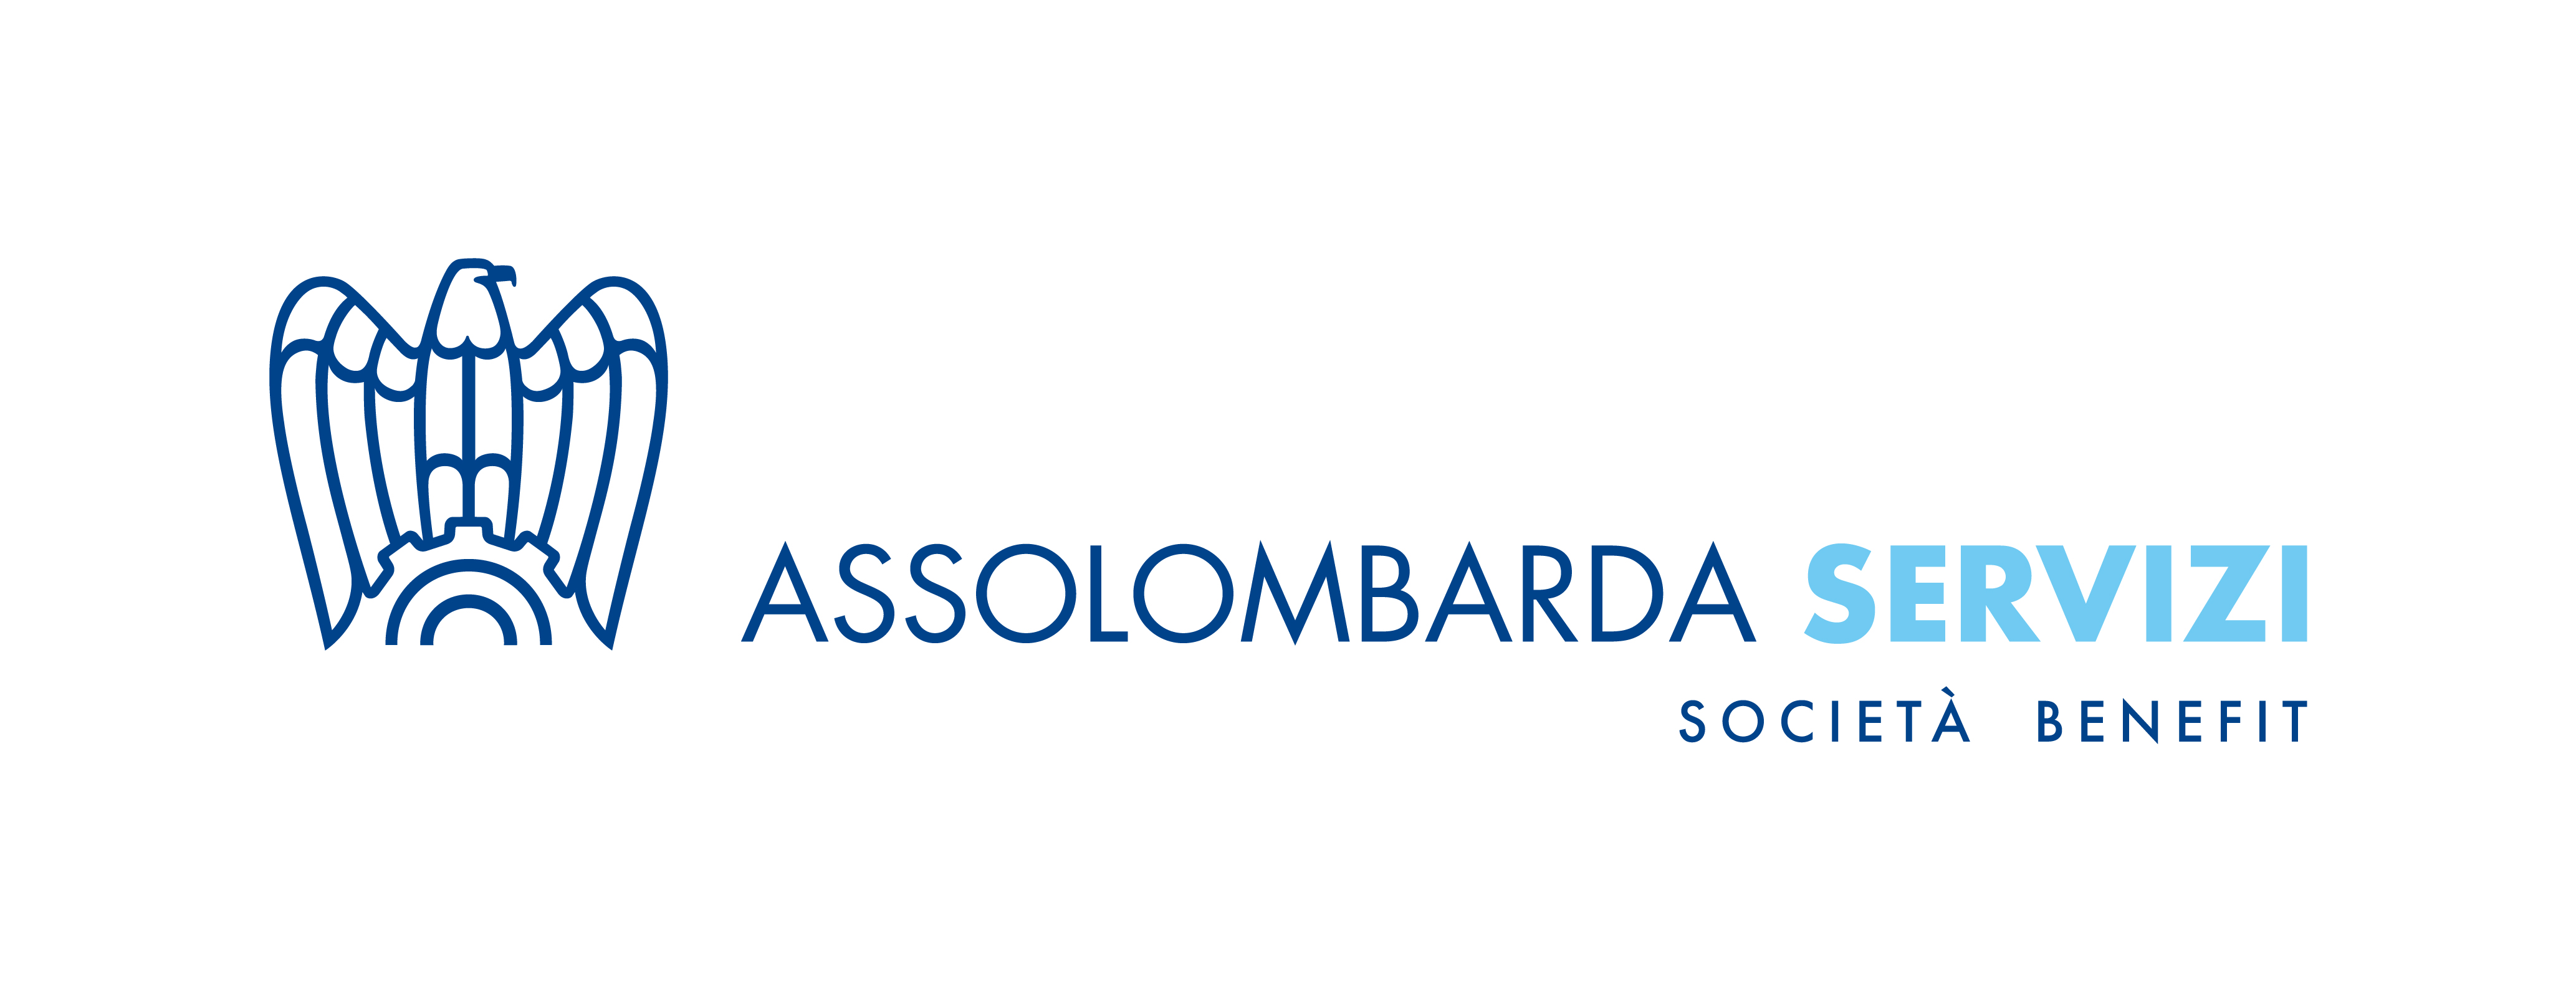 Logo Assolombarda Servizi.jpg